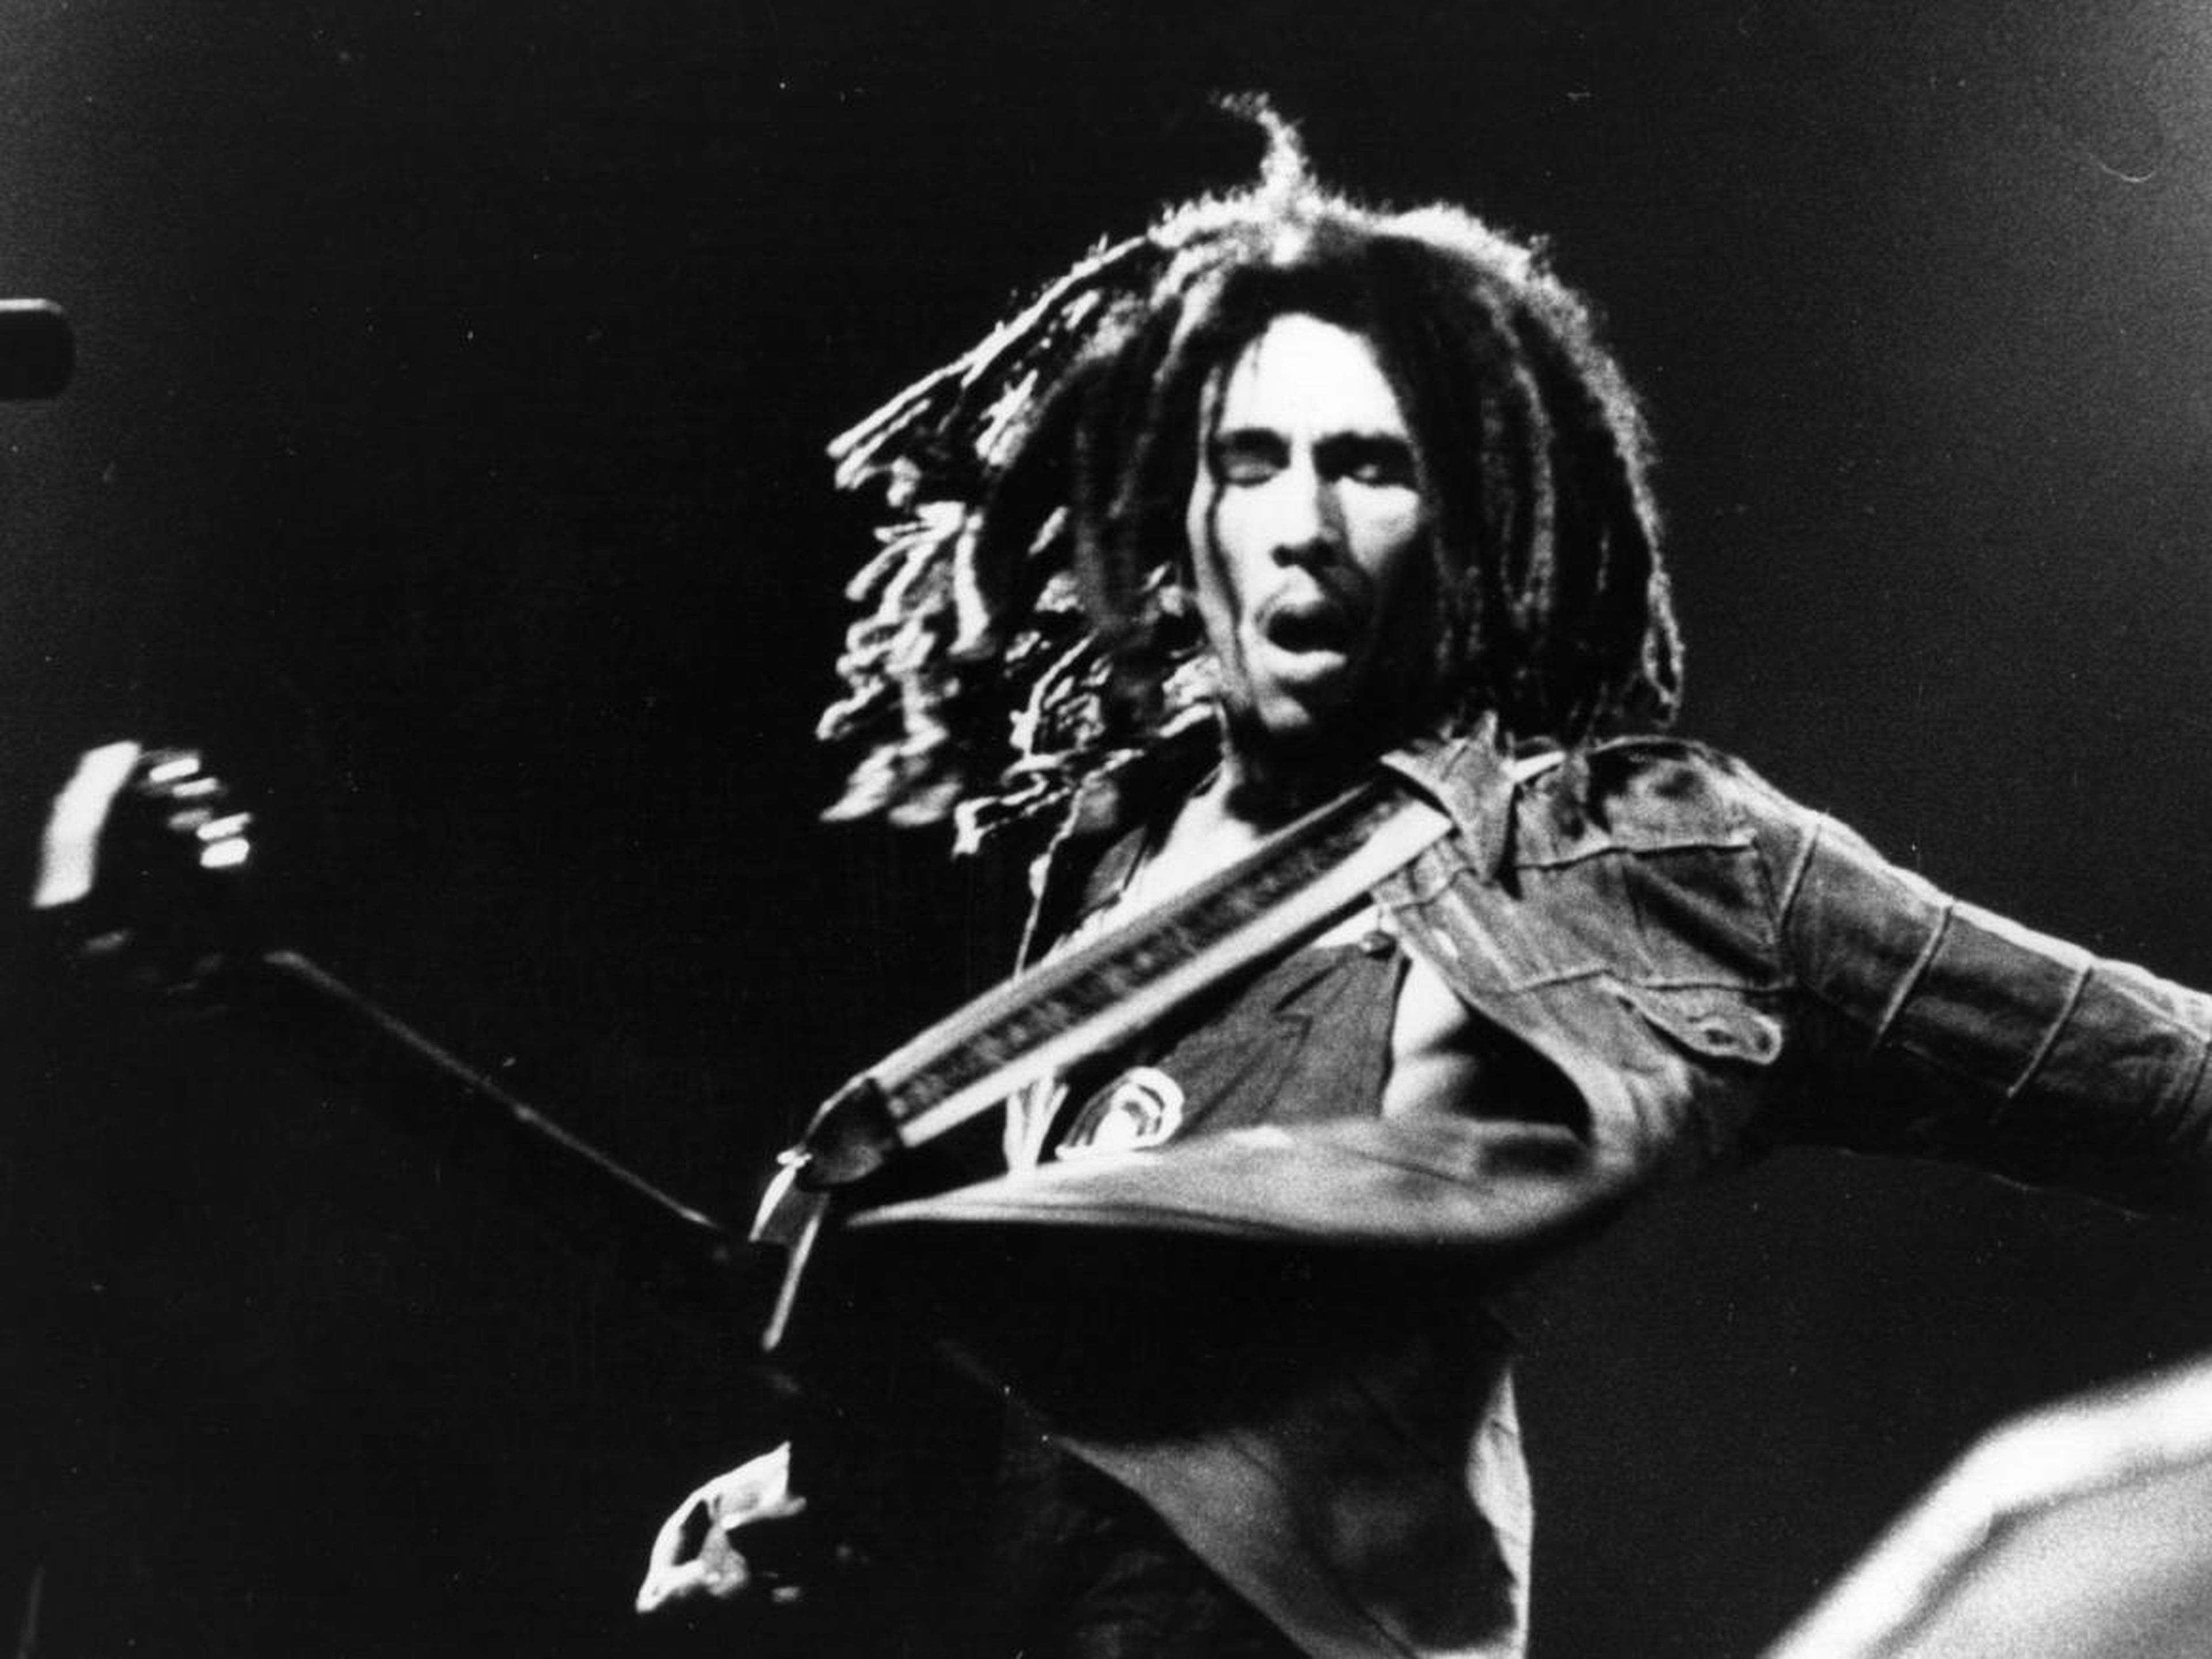 5. Bob Marley — $23 million